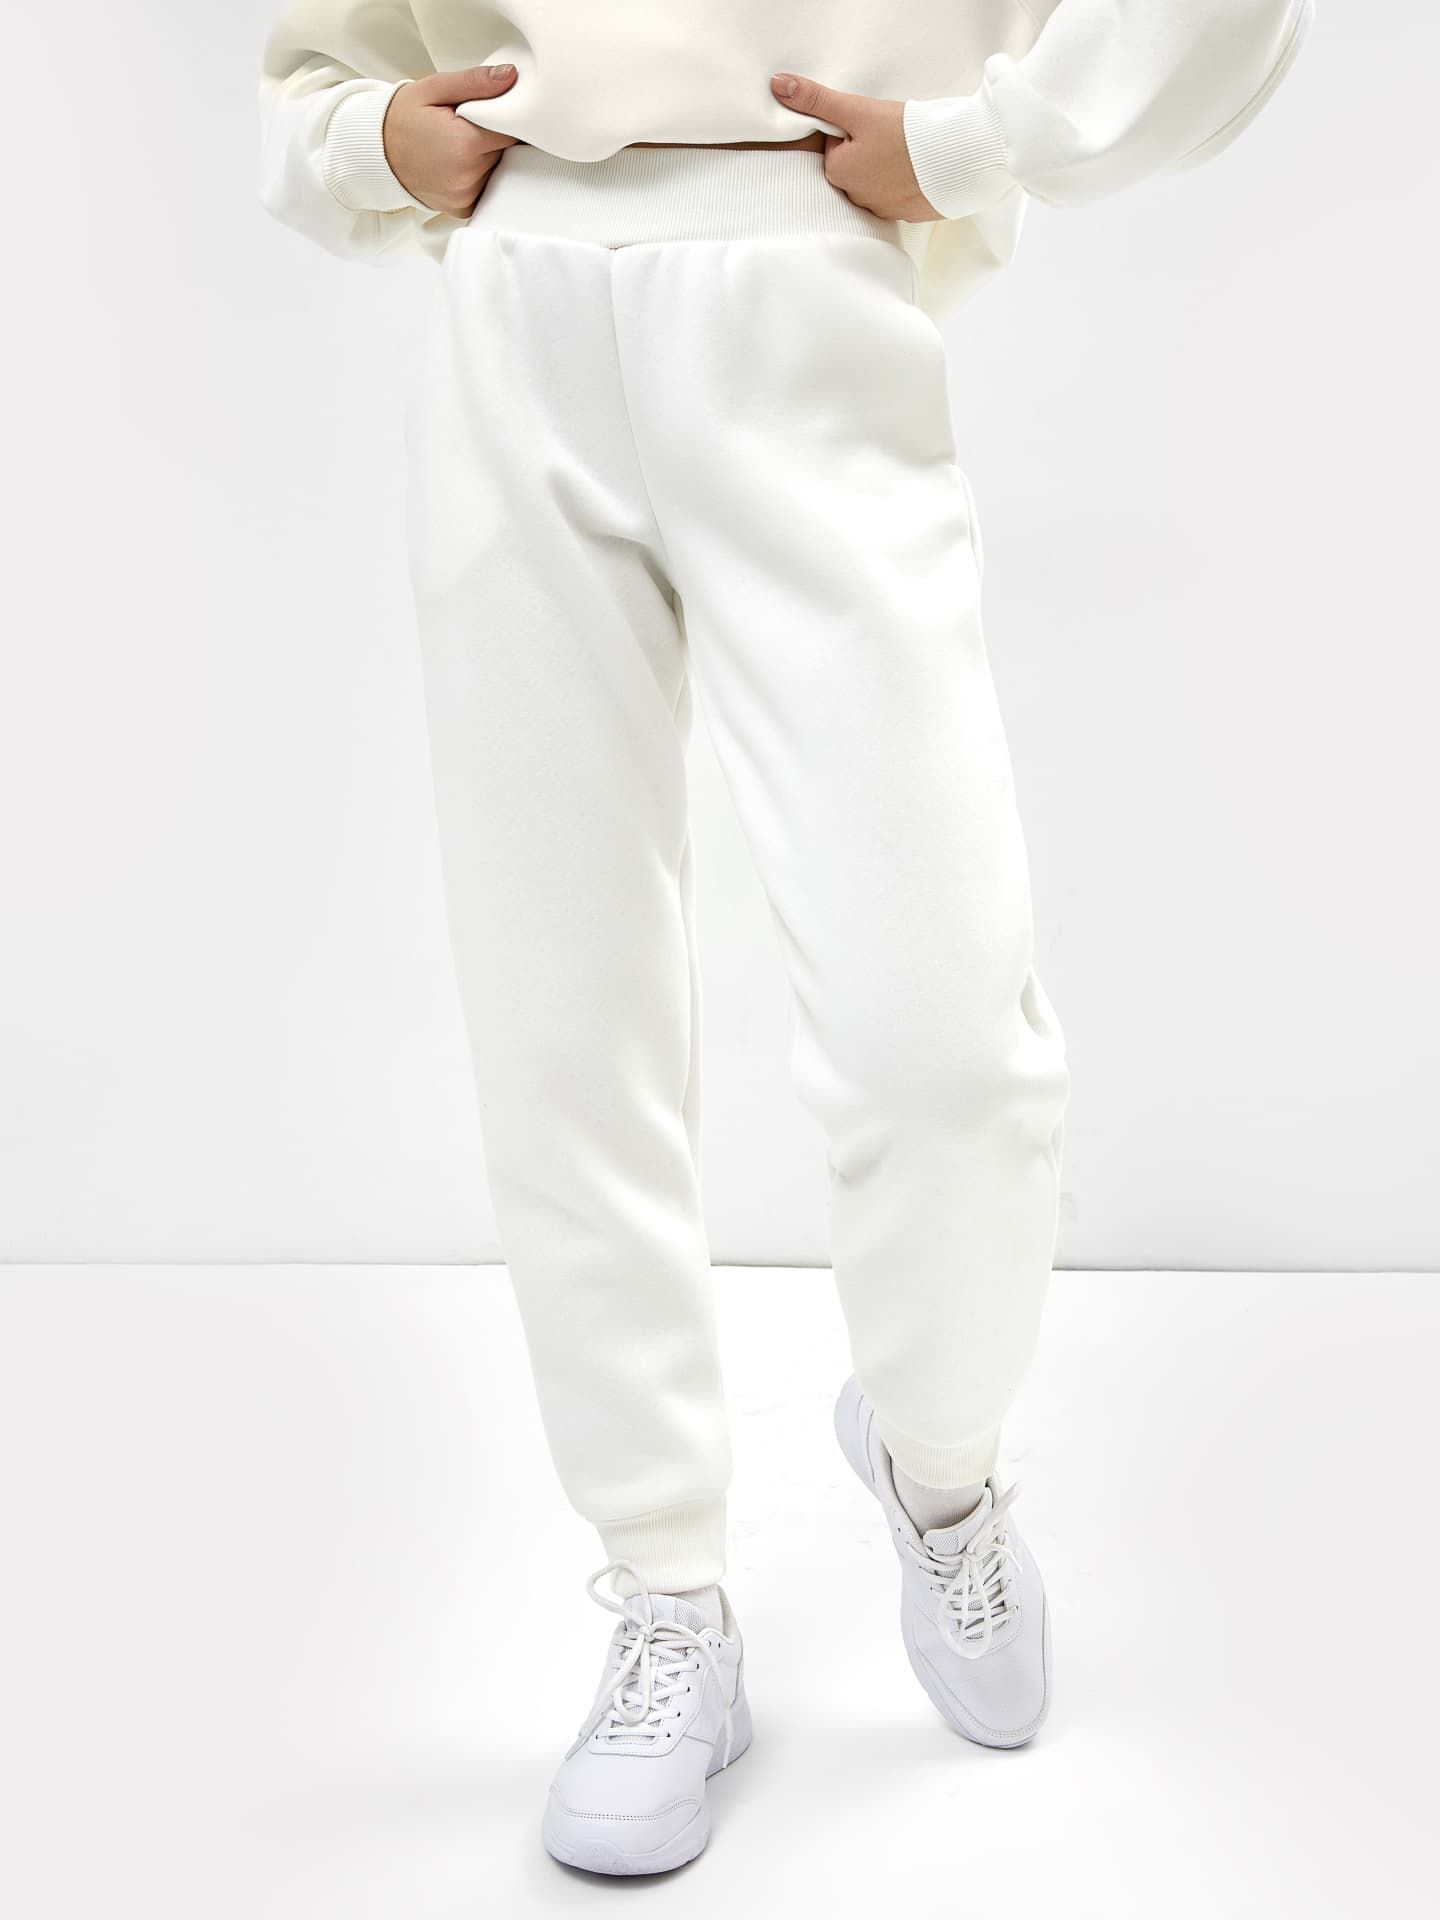 Женские брюки-джоггеры в бежевом цвете Модель: 382445 Цвет: молочный – MarkFormelle